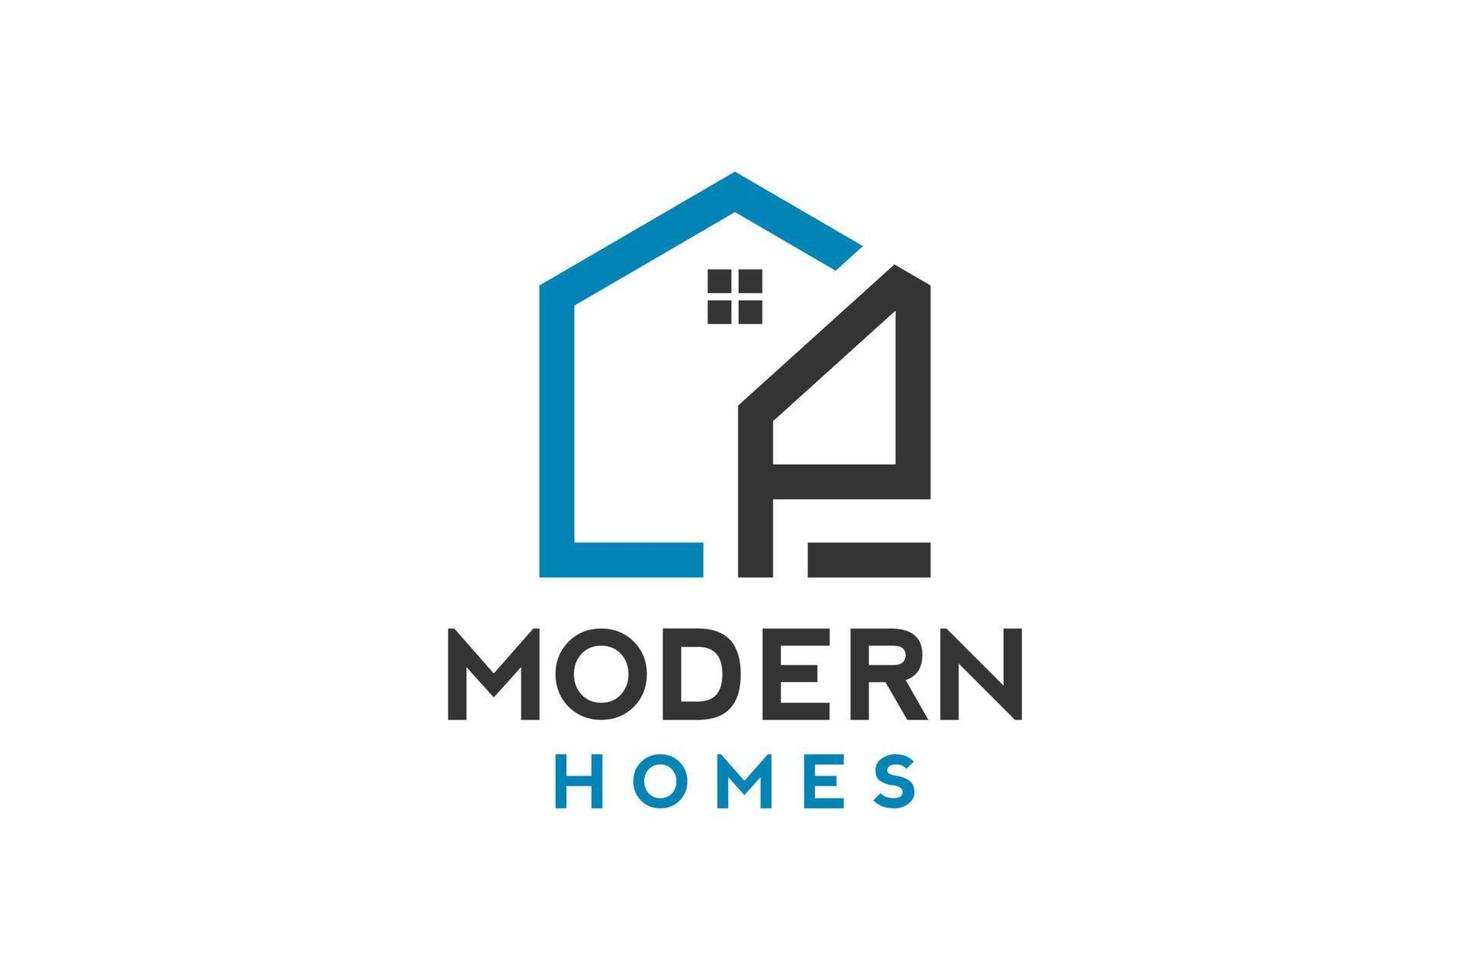 Logo-Design von p in Vektor für Bau, Haus, Immobilien, Gebäude, Eigentum. minimale fantastische trendige professionelle logo-design-vorlage.